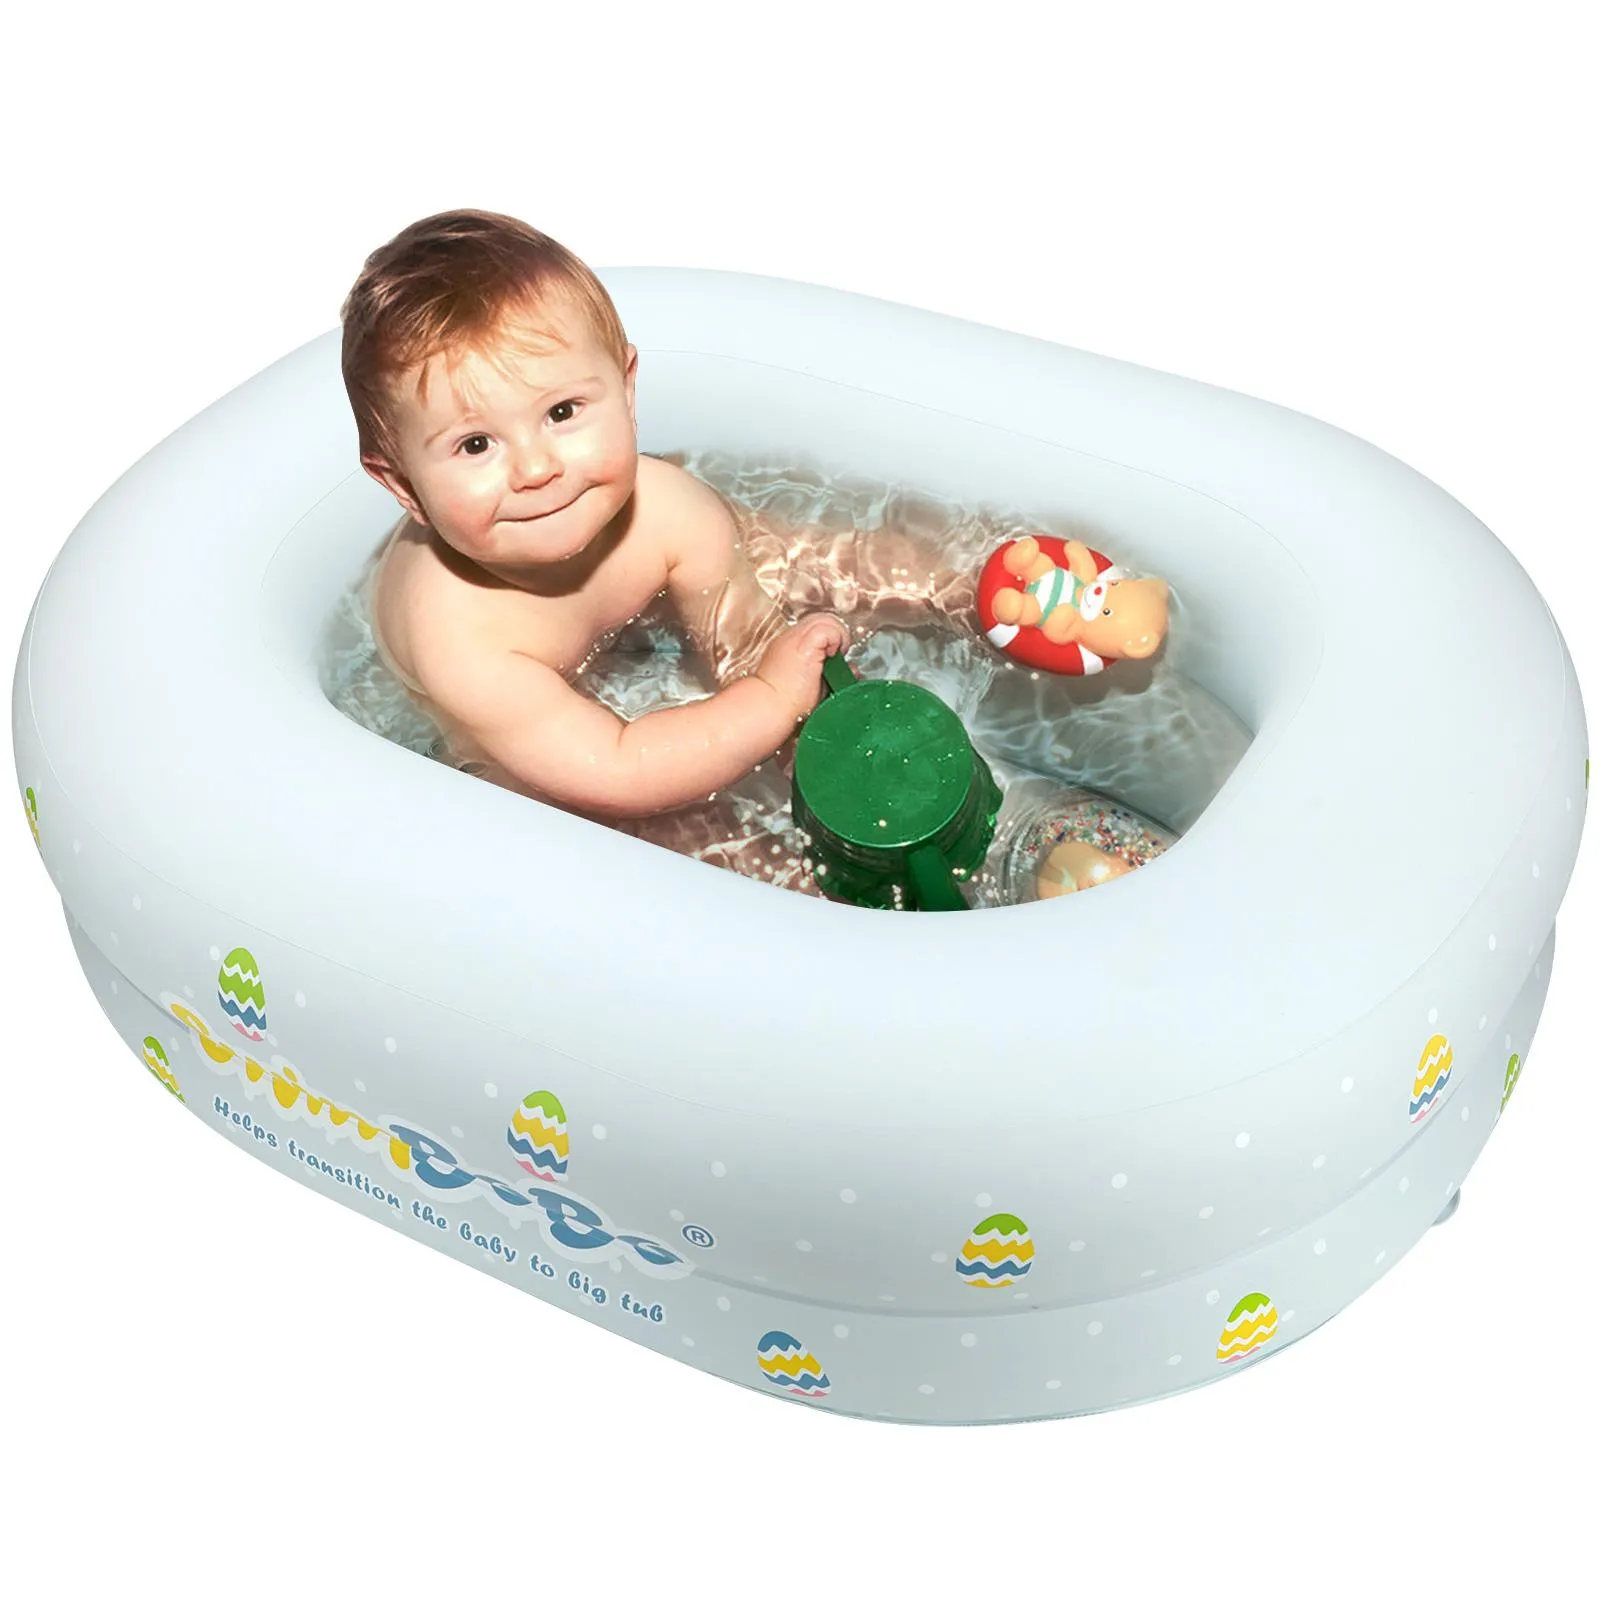 Gravestonen Ierenbaar babybadbad mini zwembad baby badbassin koks stoel draagbare vouwbare zachte badkuip zwemaccessoires